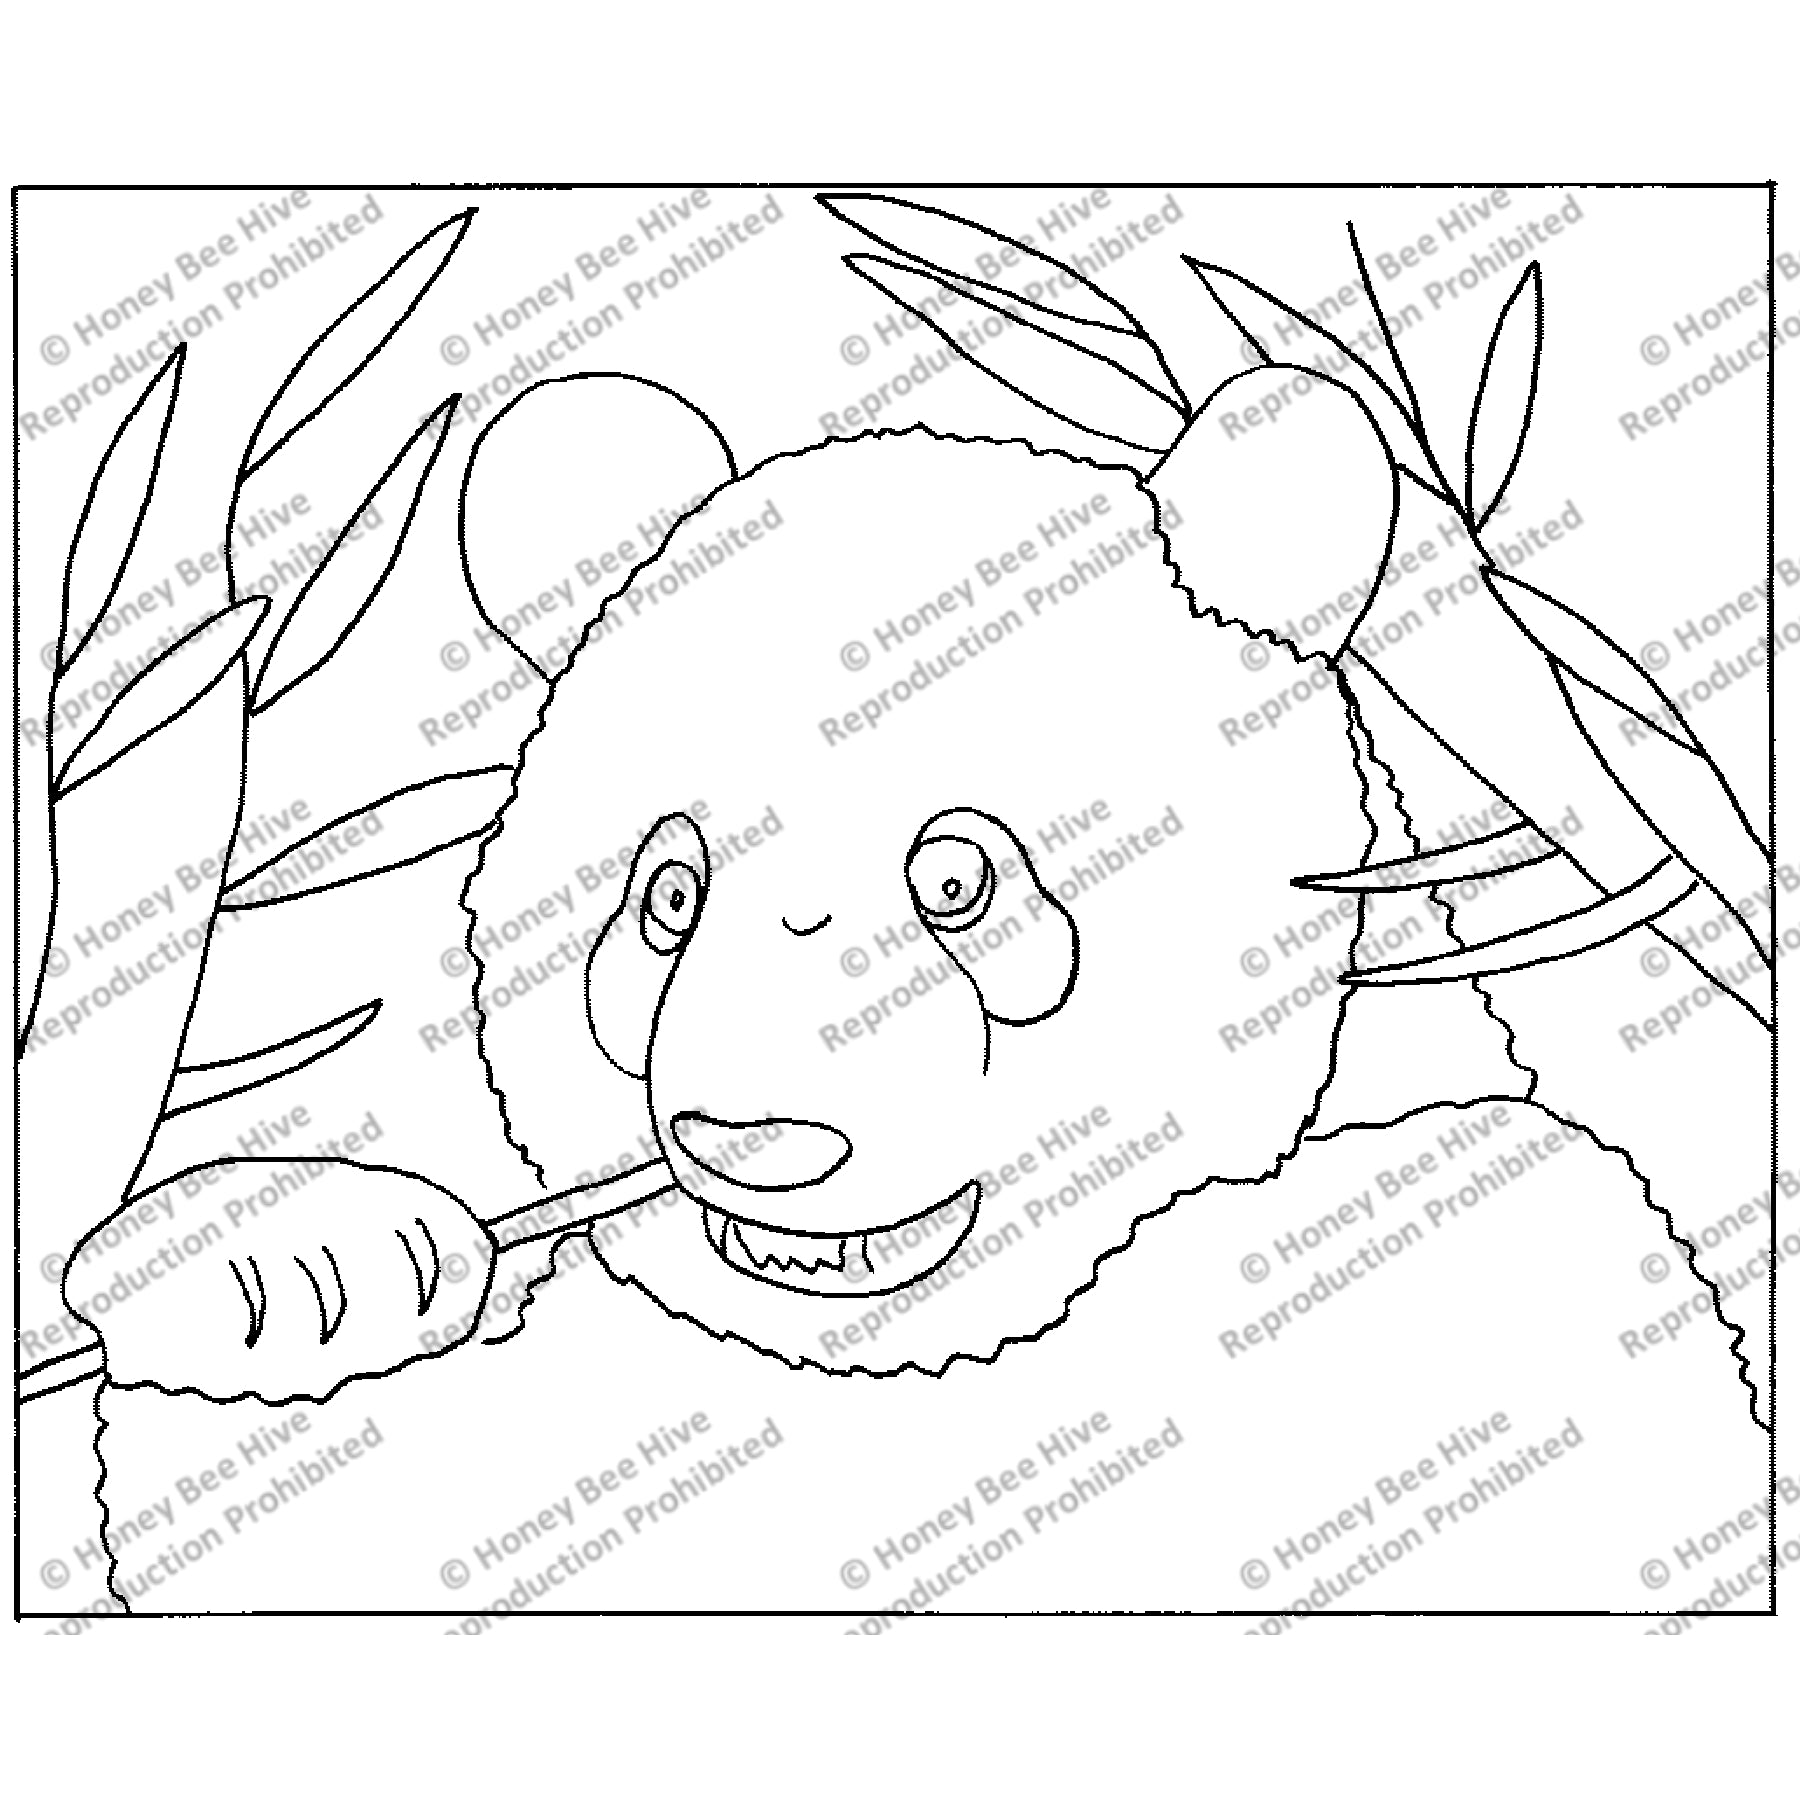 Panda Bear, rug hooking pattern